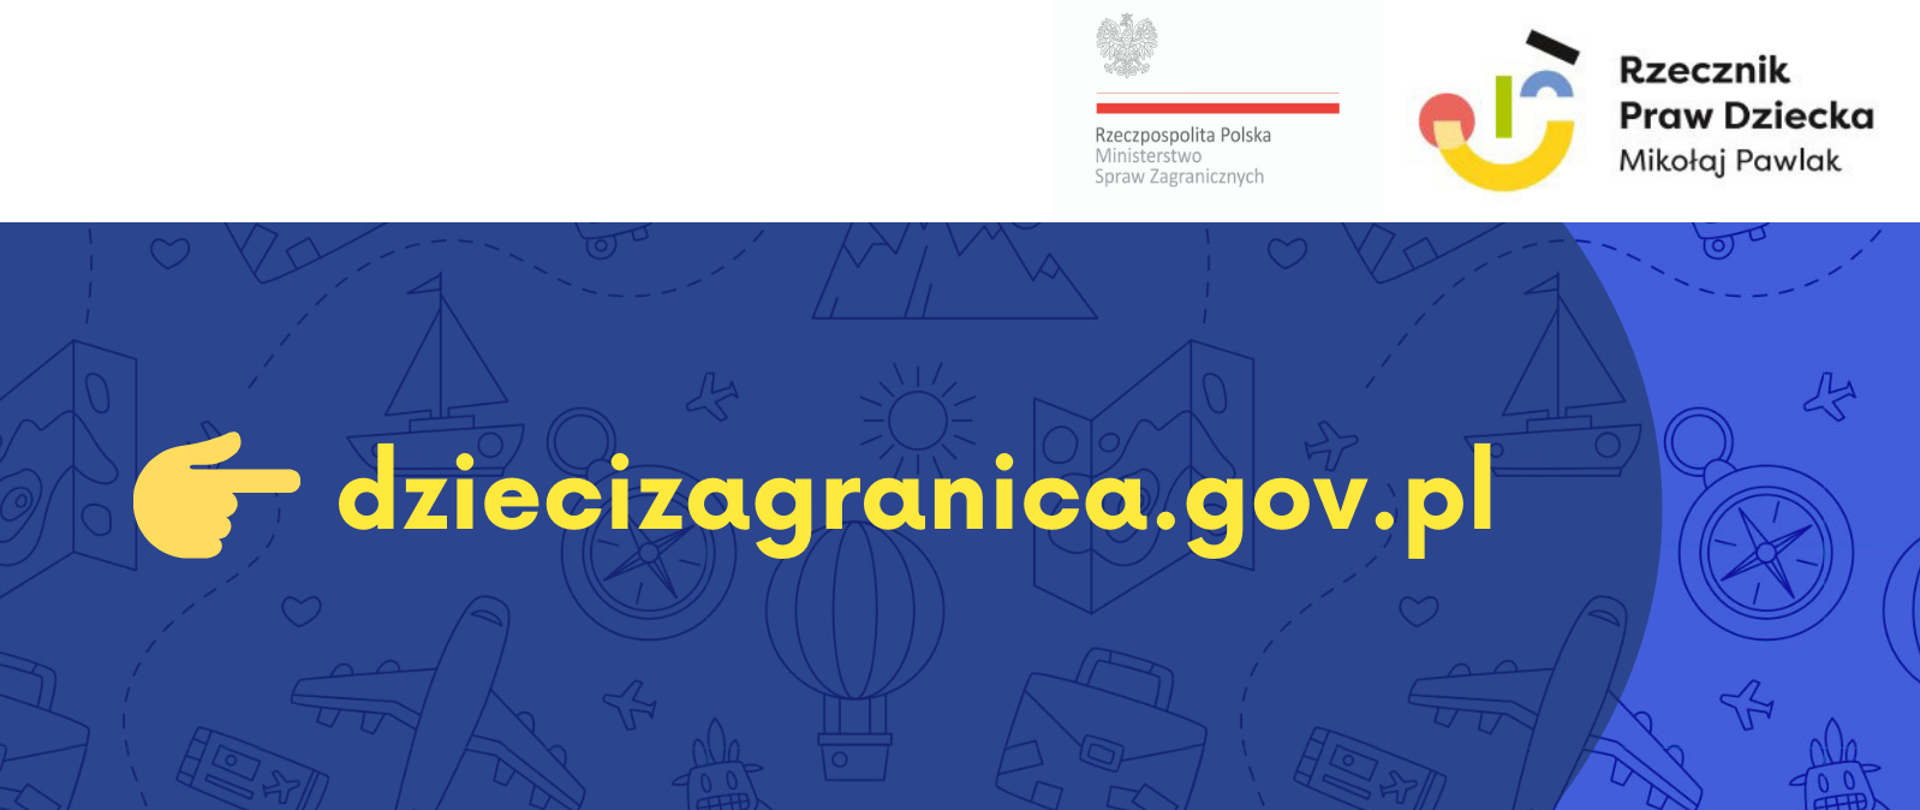 Banner do strony www dziecizagranica.gov.pl